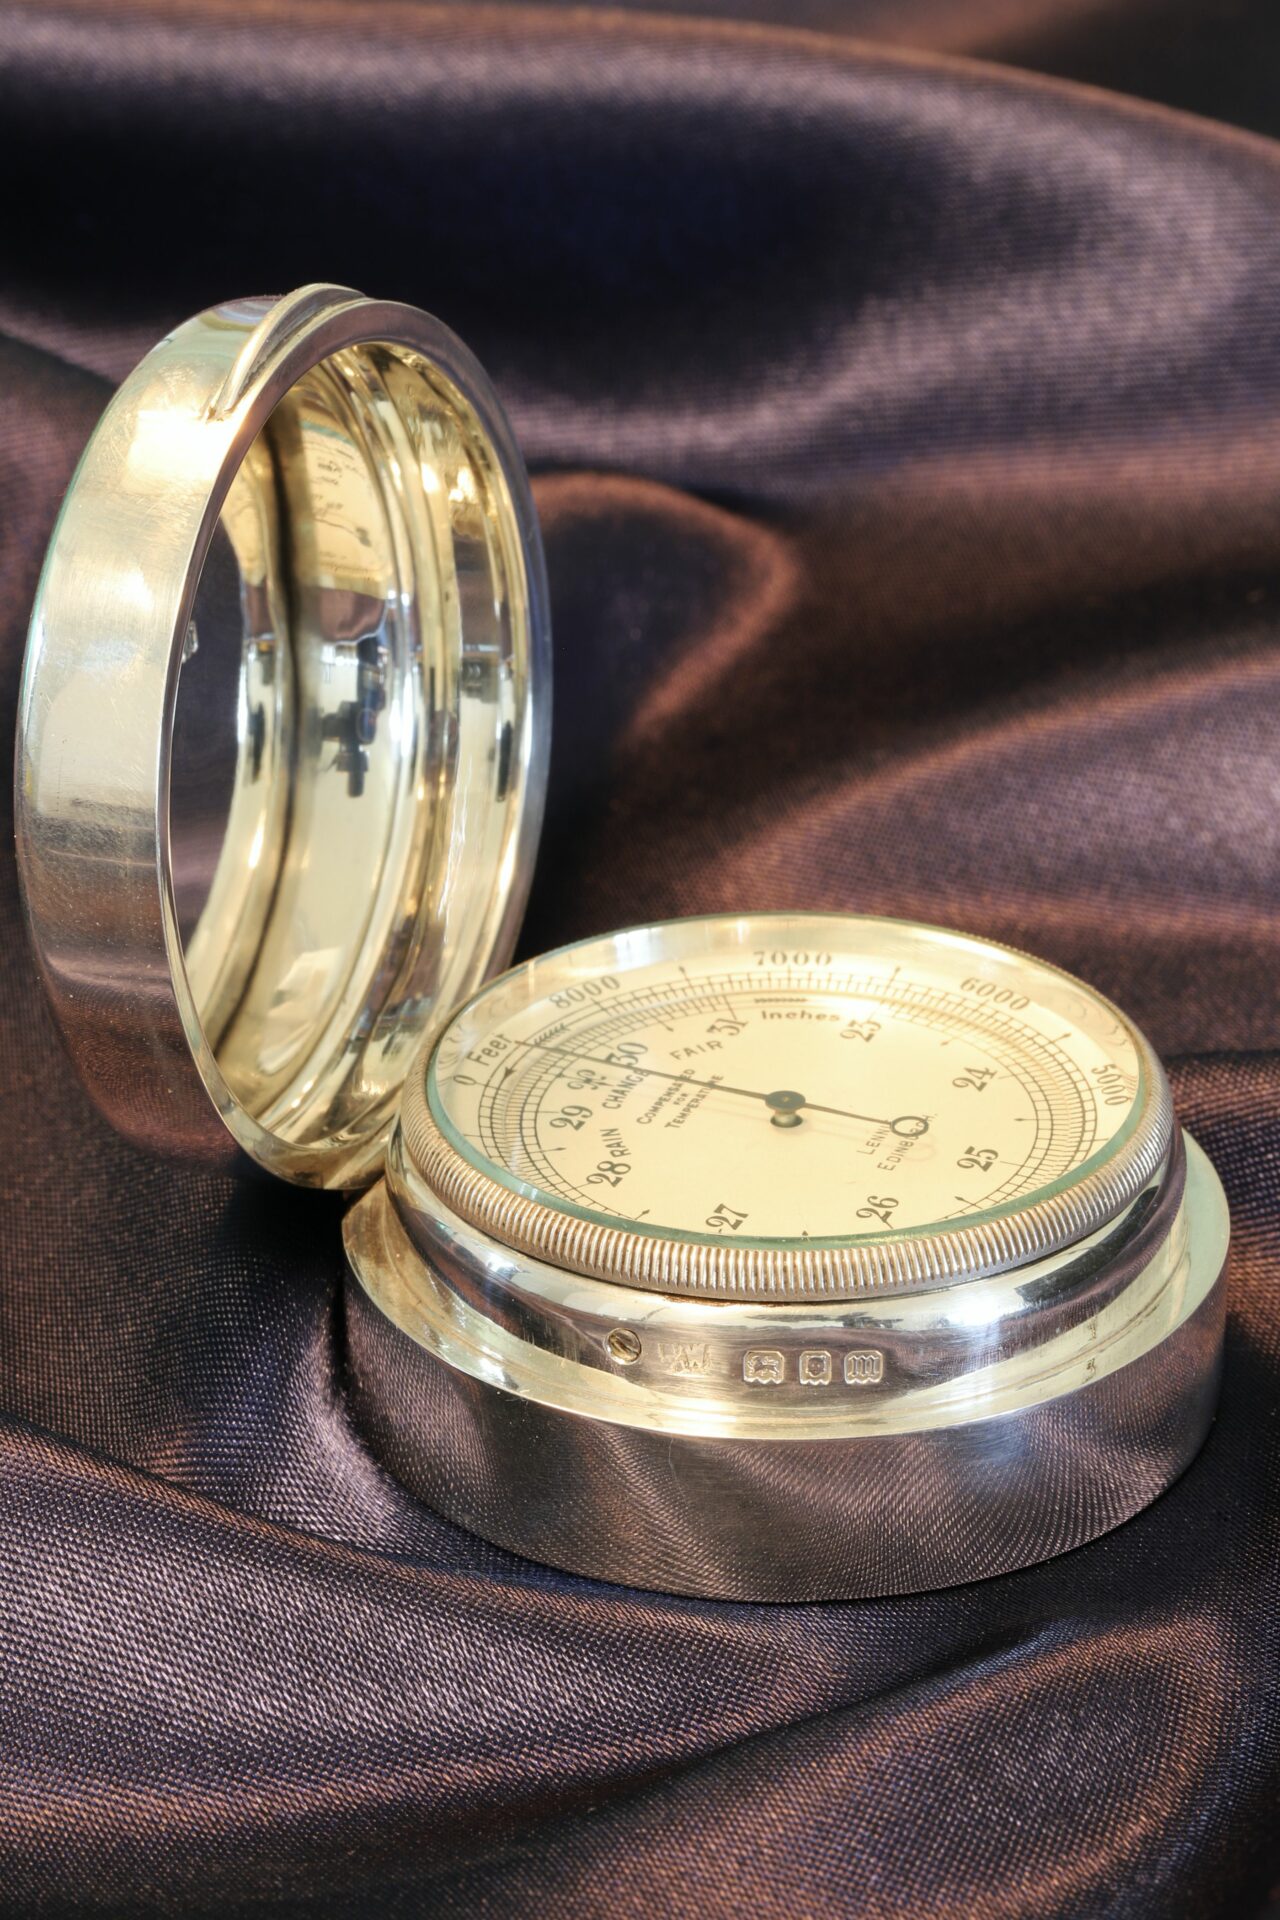 Negretti & Zambra Pocket Barometer in Silver Case by Mappin & Webb c1927 taken from lefthand side